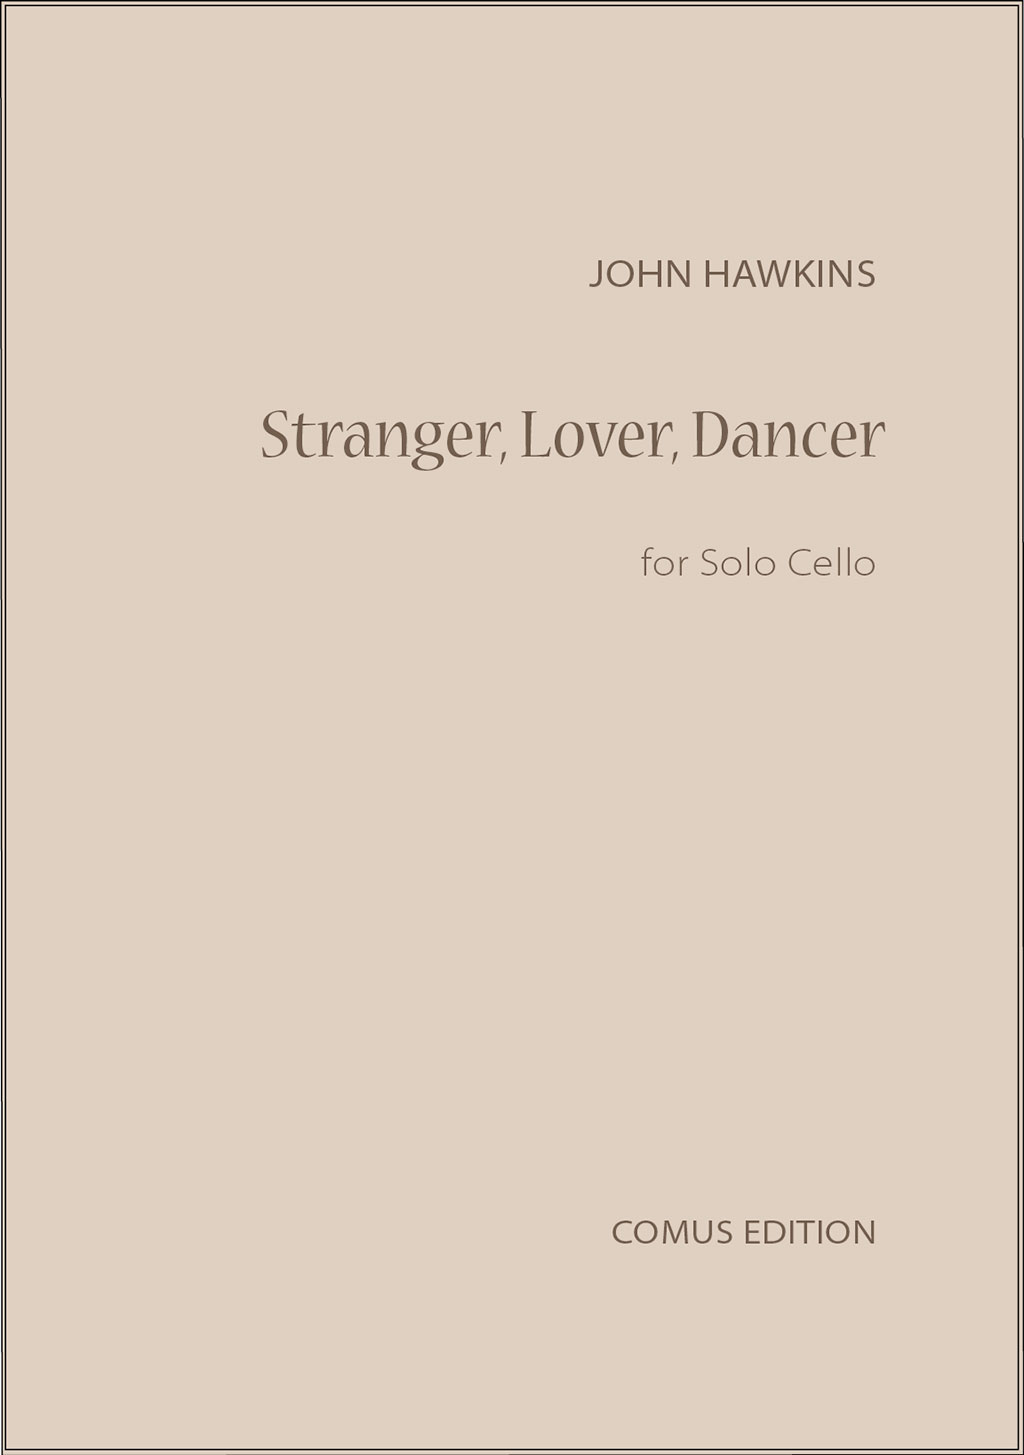 Outer cover of item Stranger, Lover, Dancer